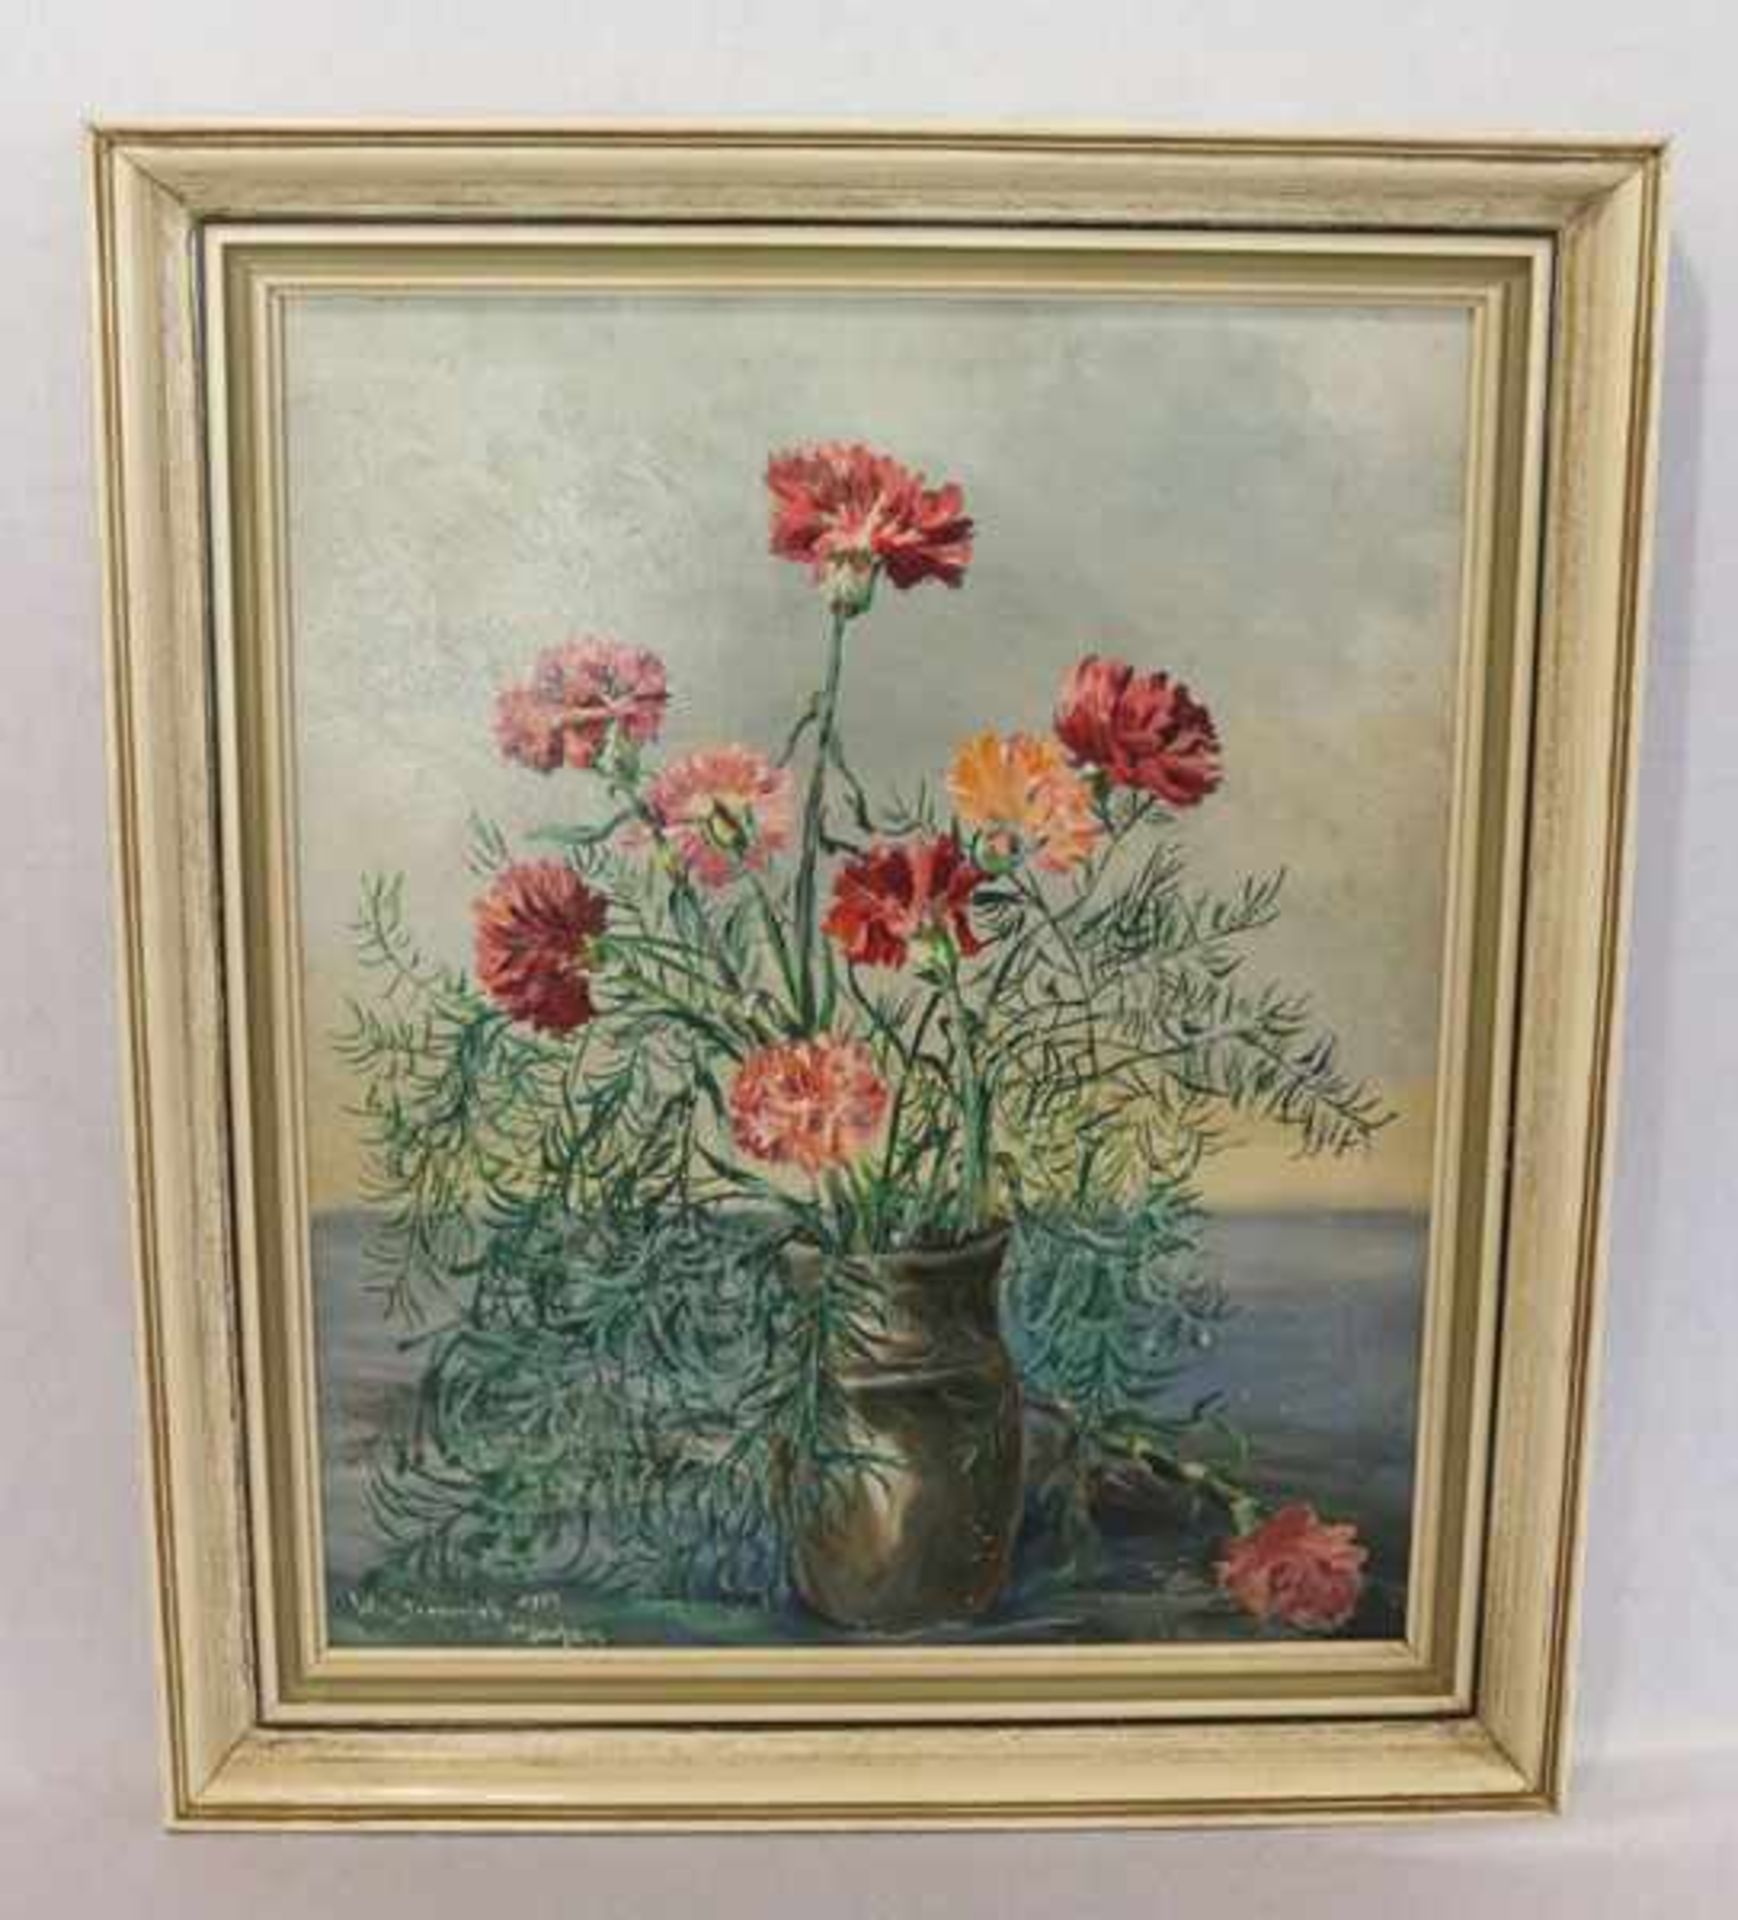 Gemälde ÖL/LW 'Nelken in Vase', signiert W. v. Sternenfels, 1957 München, gerahmt, Rahmen bestossen,